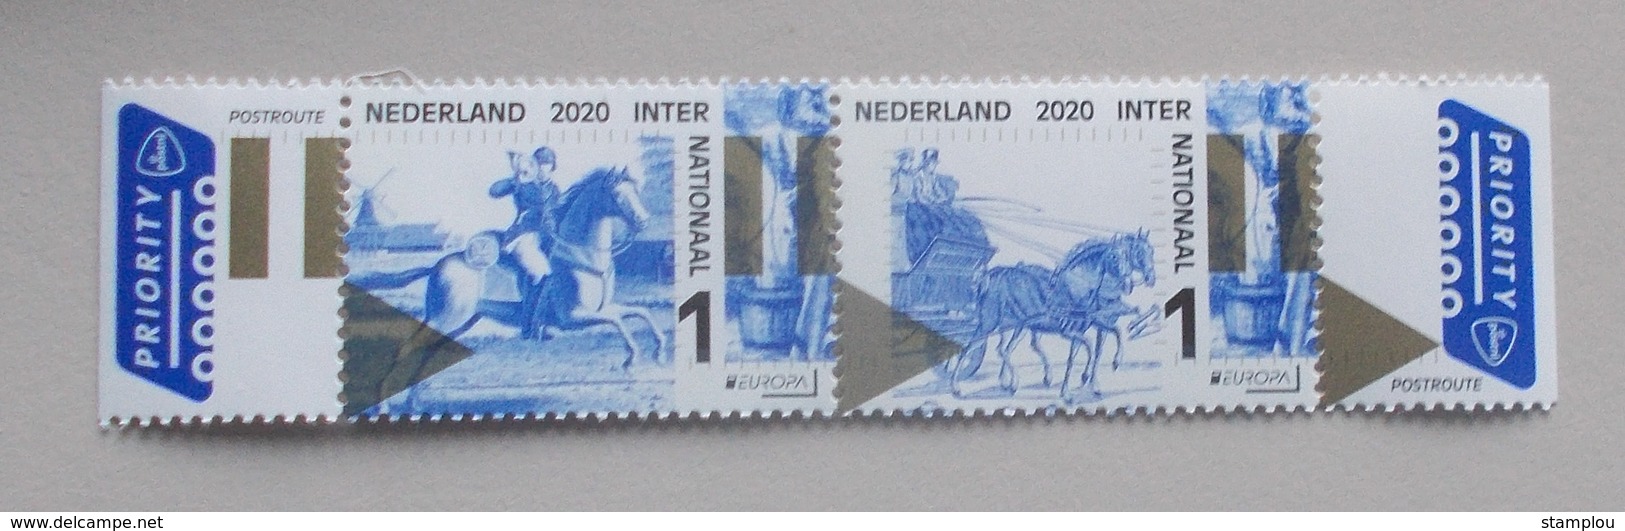 Nederland-Netherlands 2020 Cept - 2019